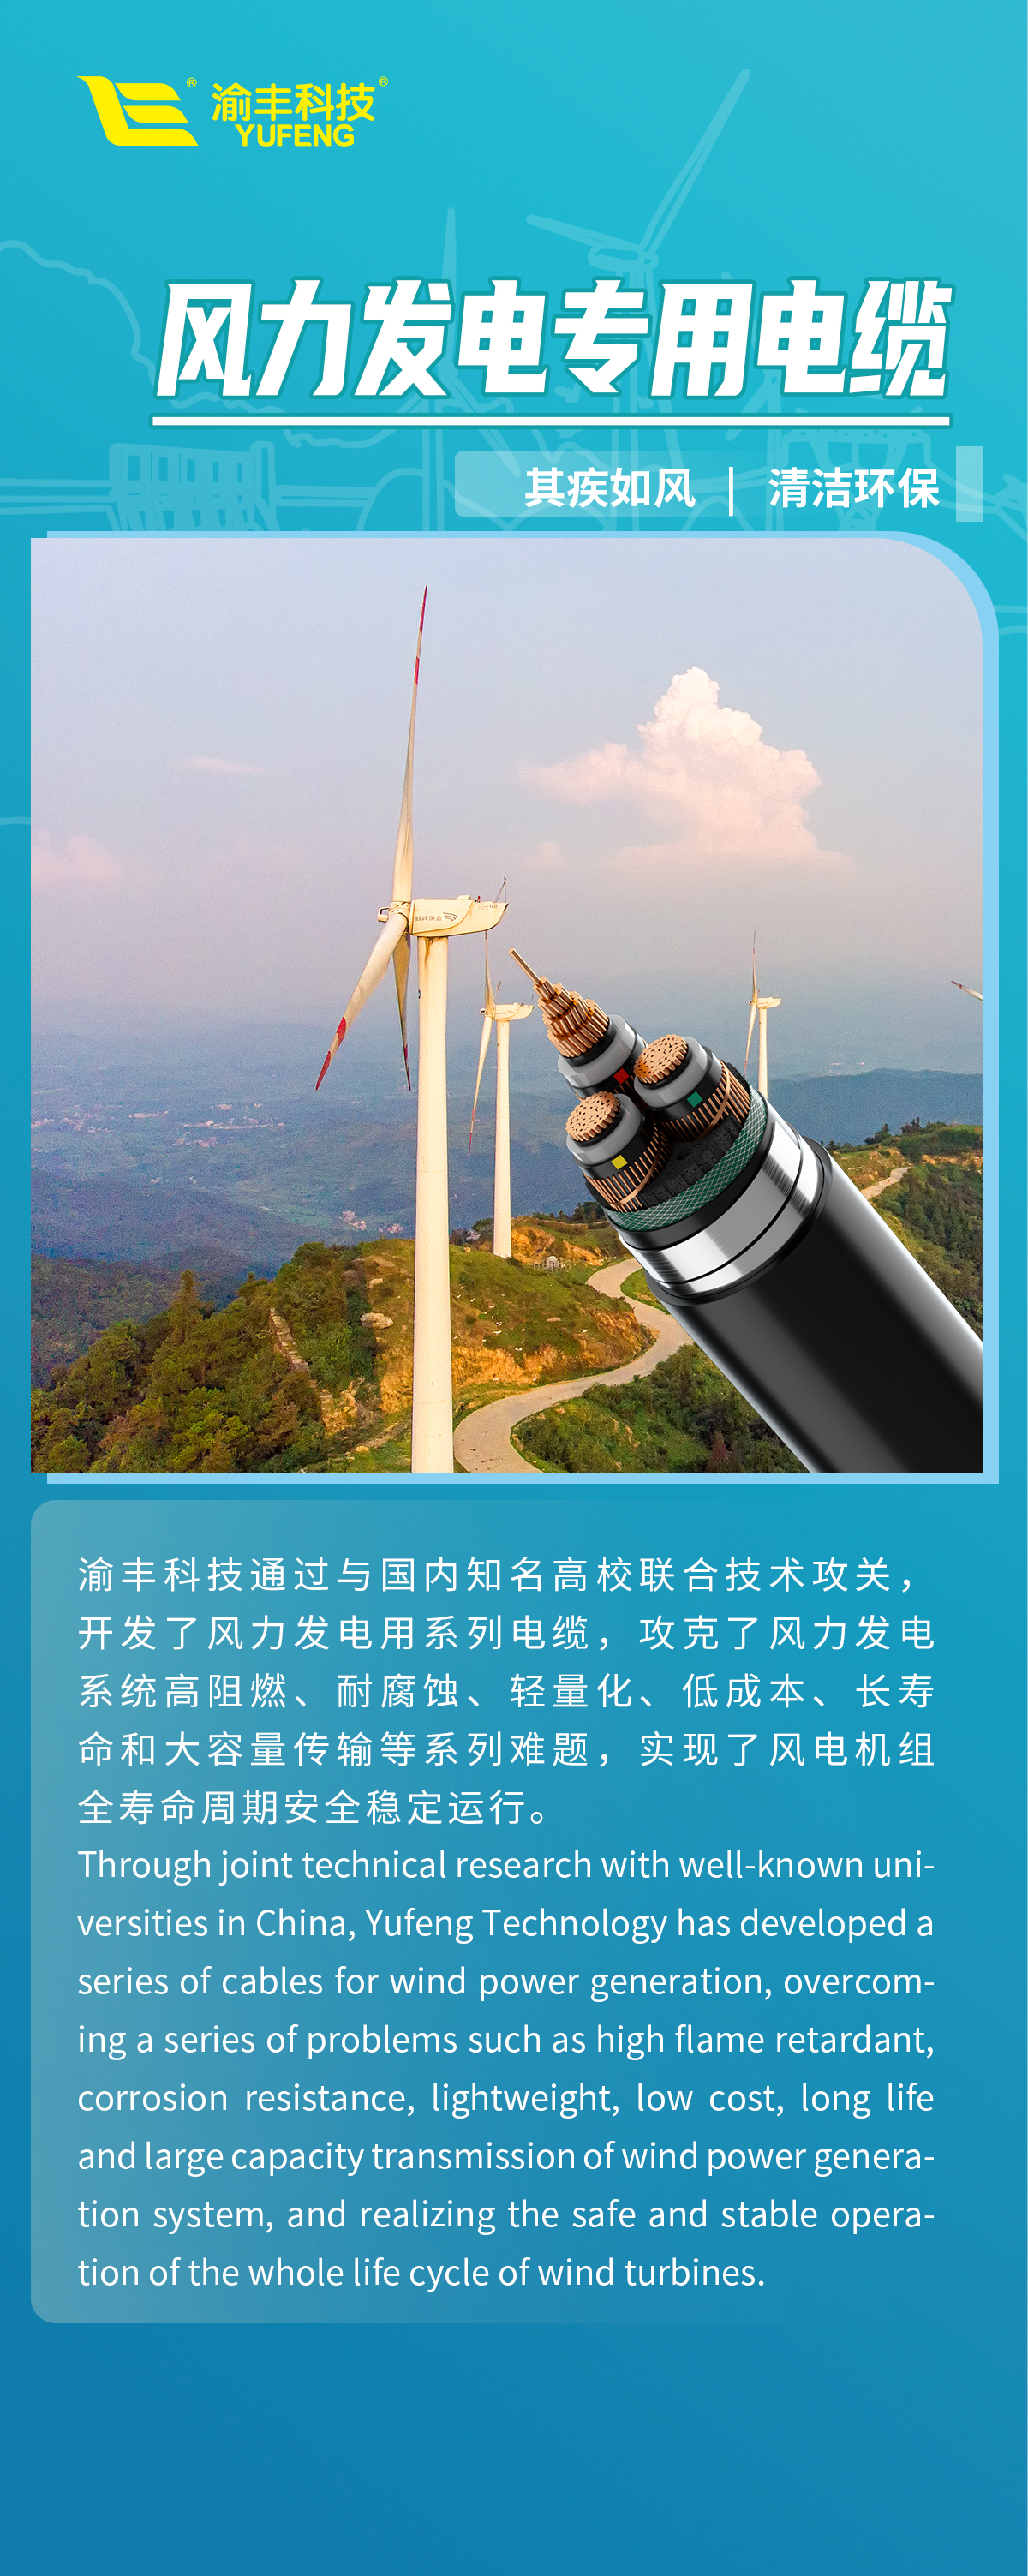 贯彻国家“双碳”战略，渝丰科技推动电缆产业绿色变革